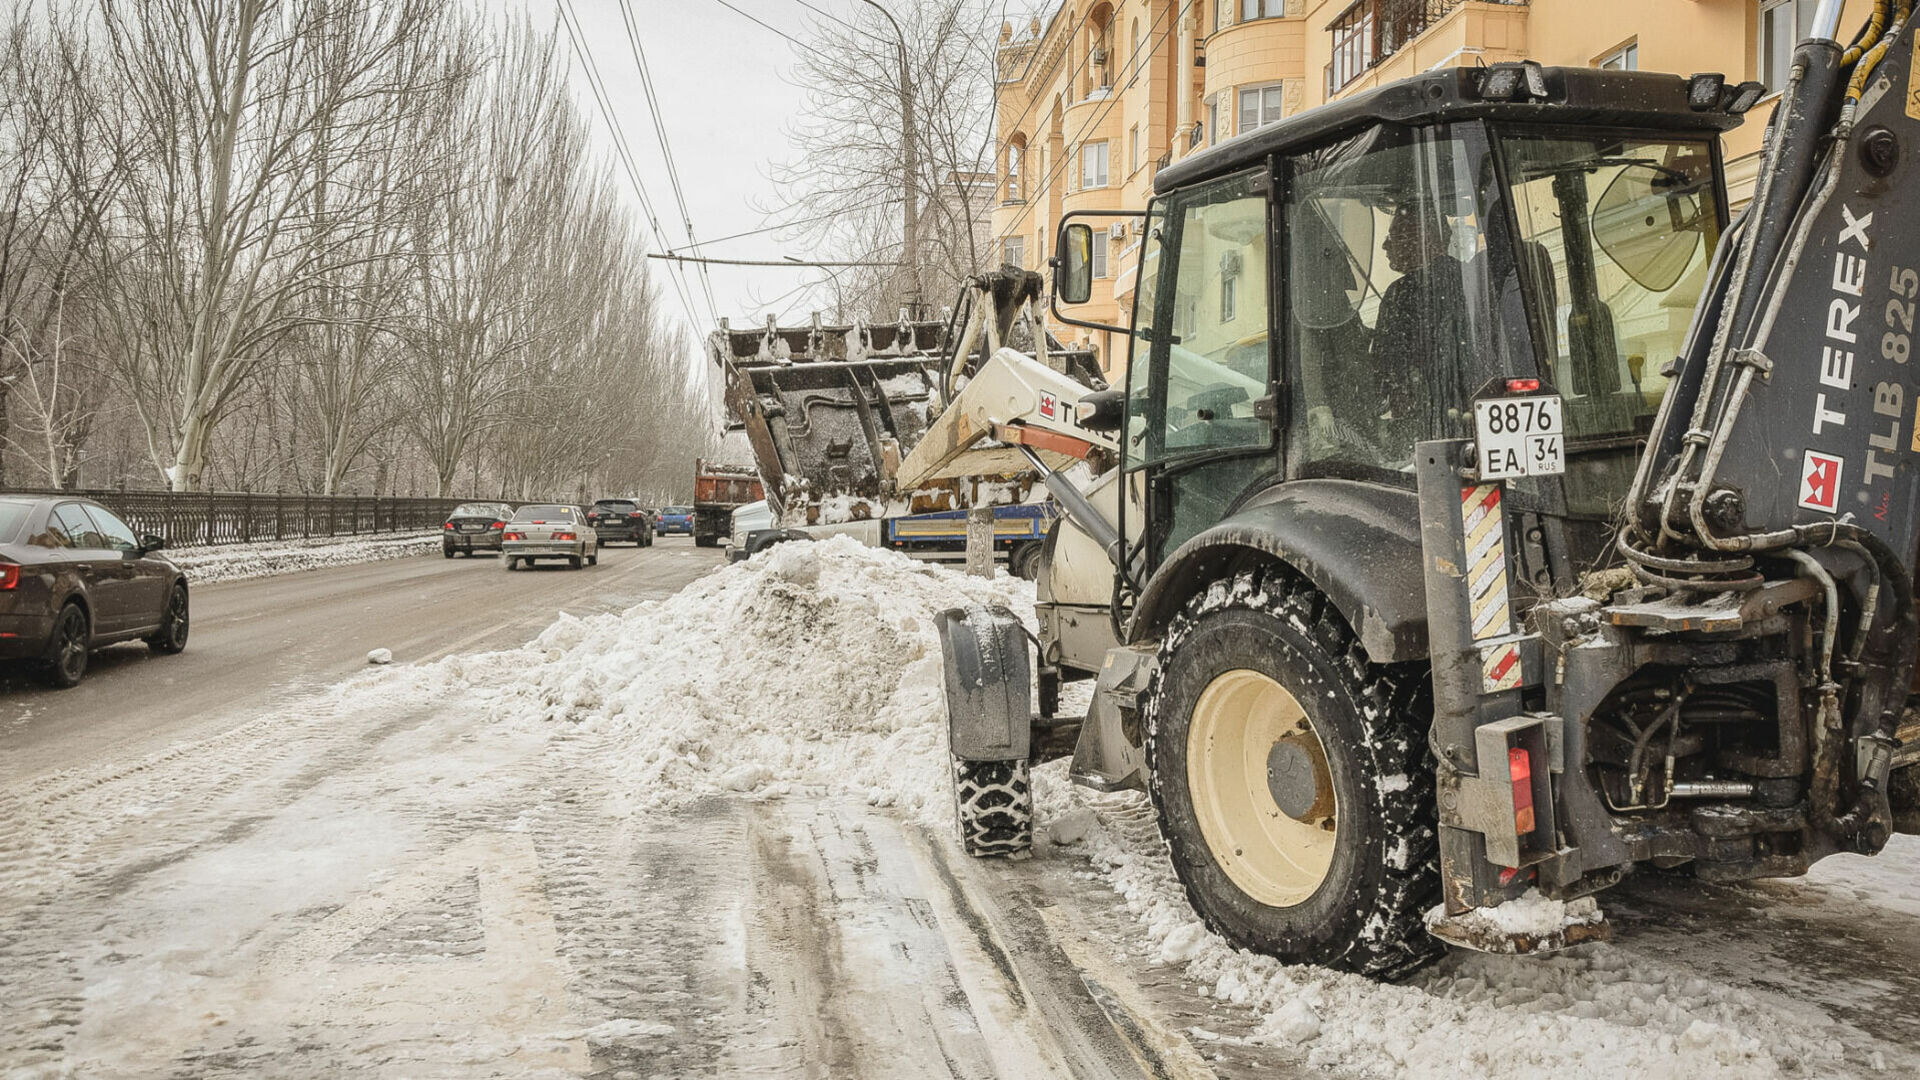 Жители Тюмени жалуются в соцсетях на плохую уборку снега в городе